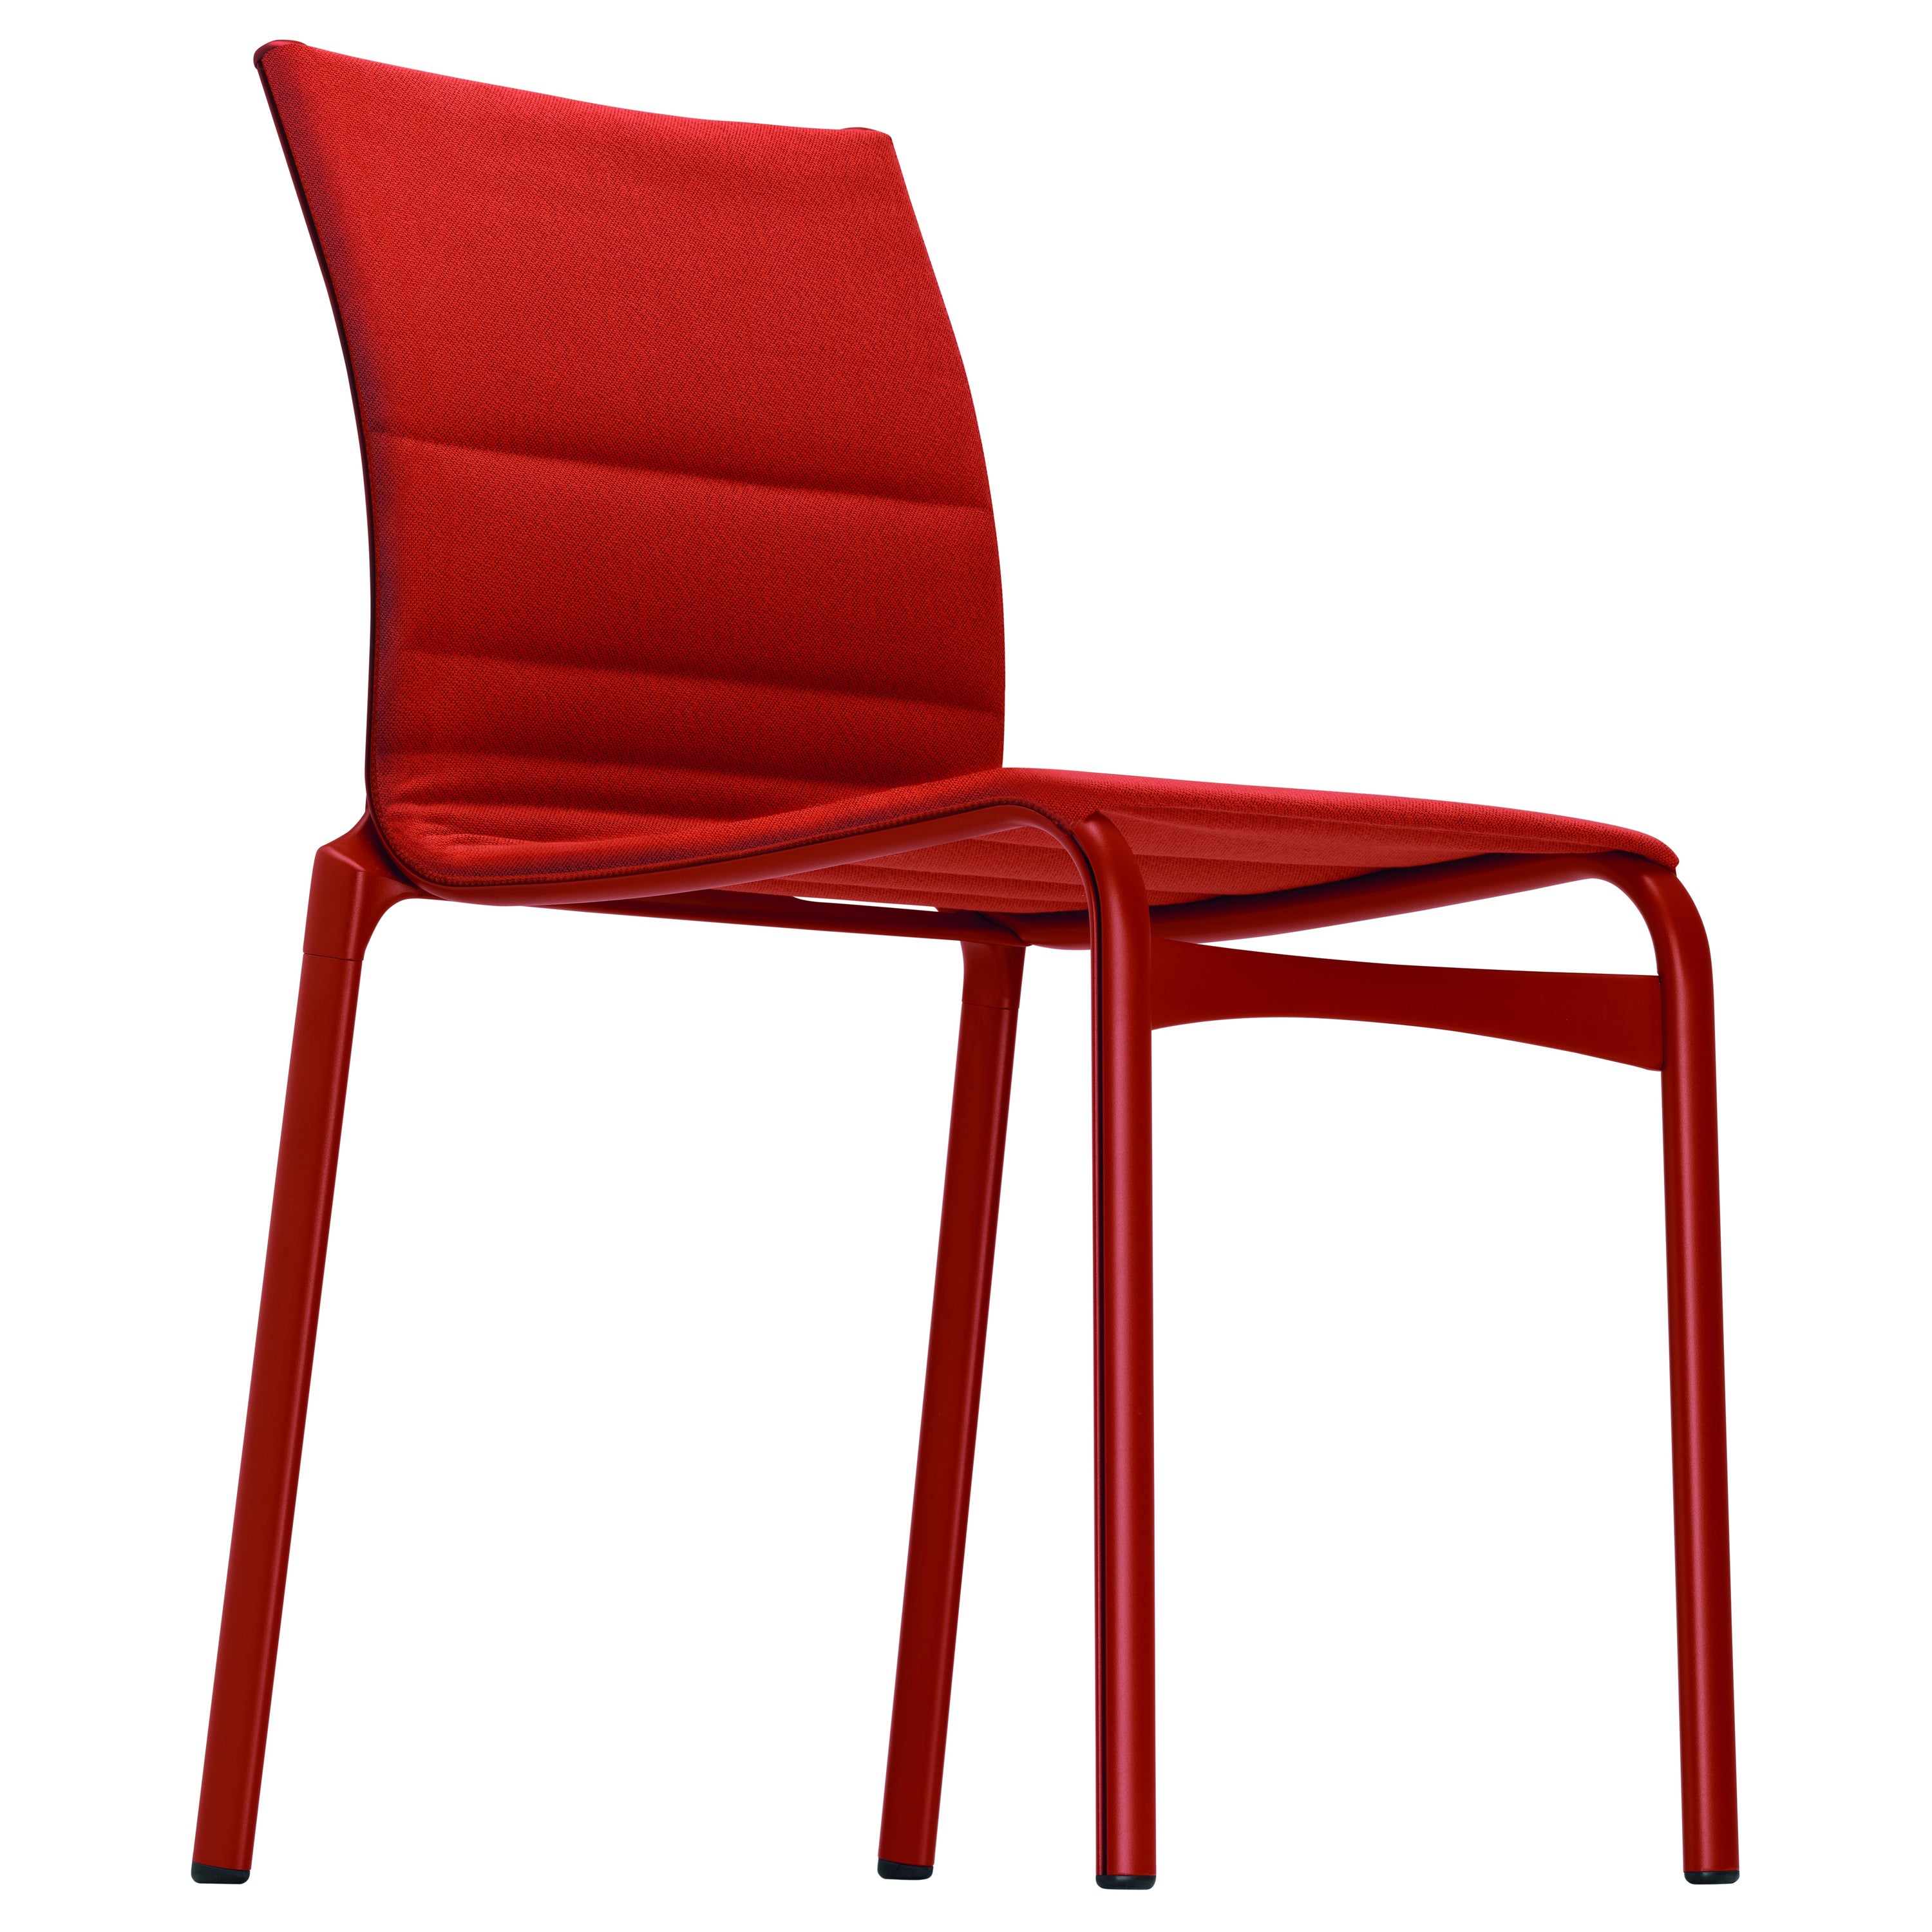 Alias - Chaise Bigframe 44 en tissu rouge SC02 avec cadre en aluminium laqué